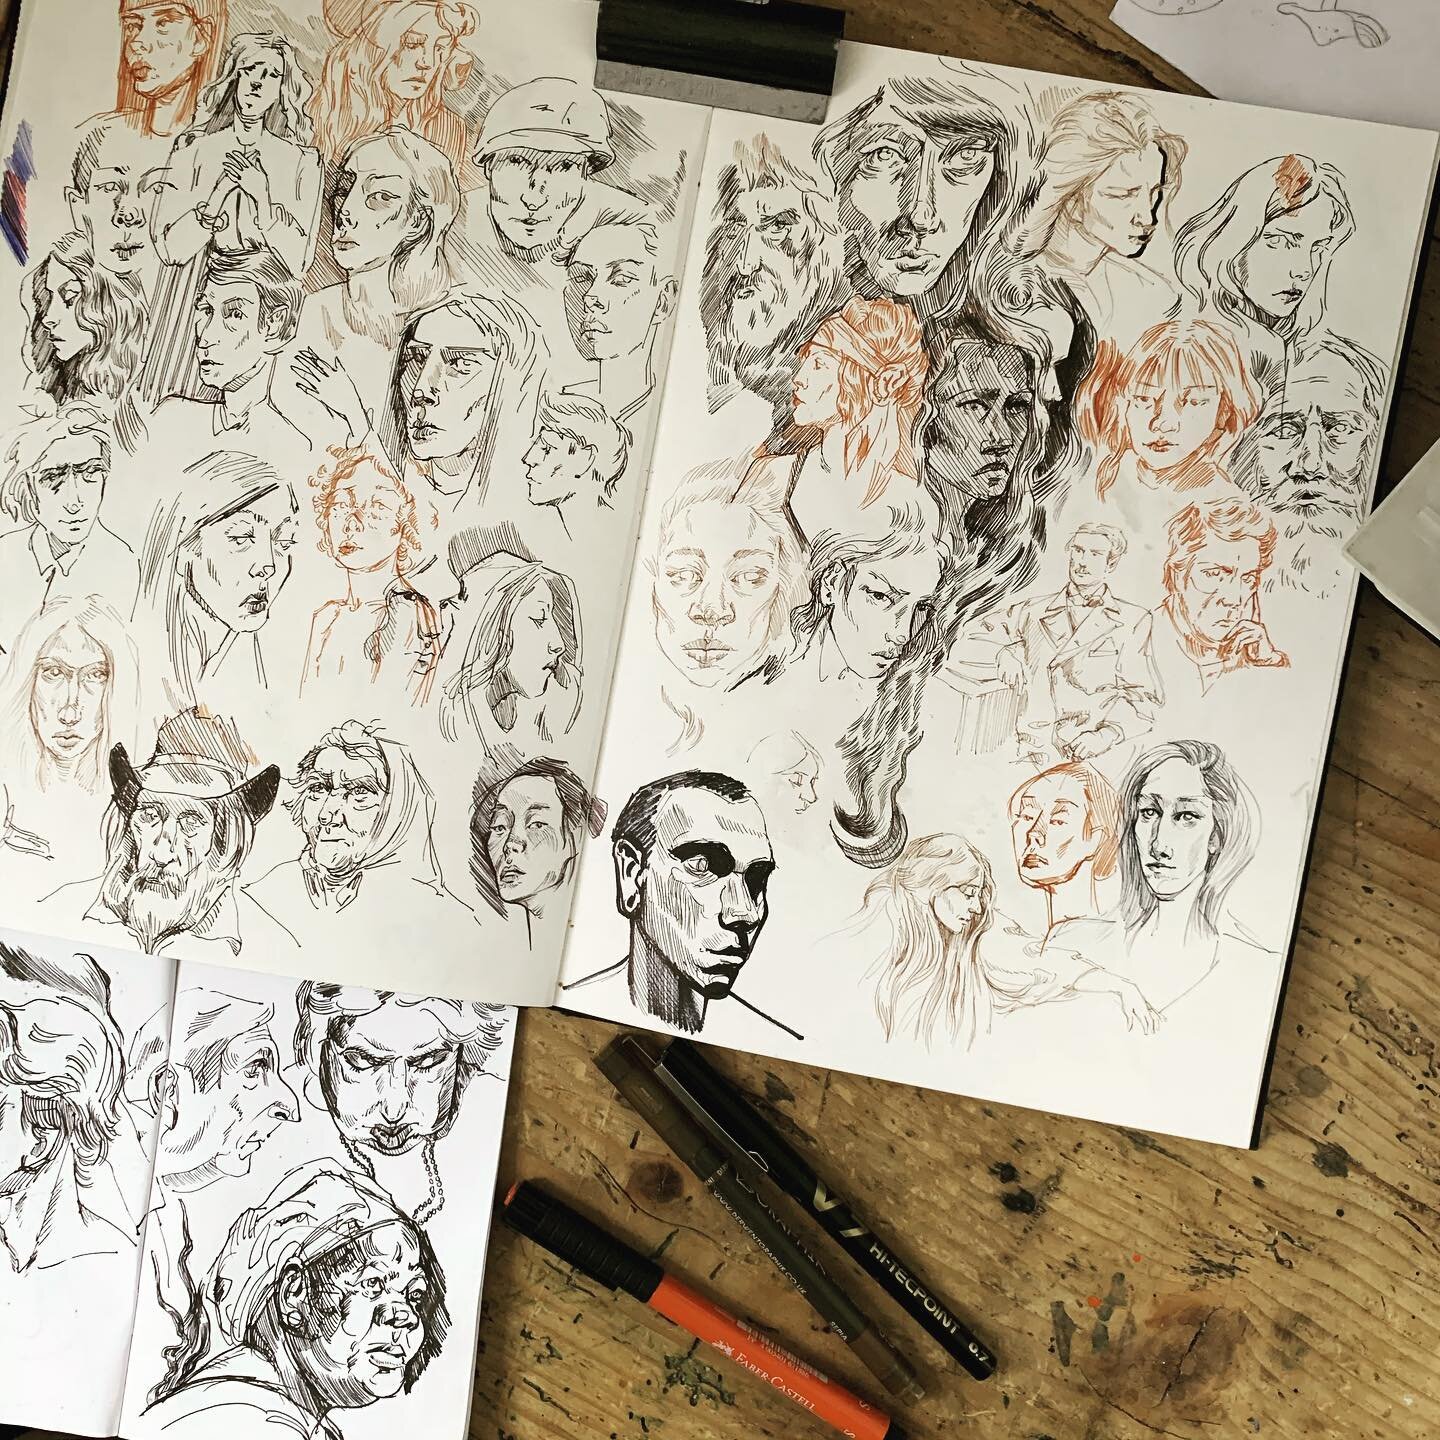 Quick pen studies, indelibility to challenge my perfectionist tendencies...
. 
.
.
.
#sketchbook #sketch #pen #portrait #faces